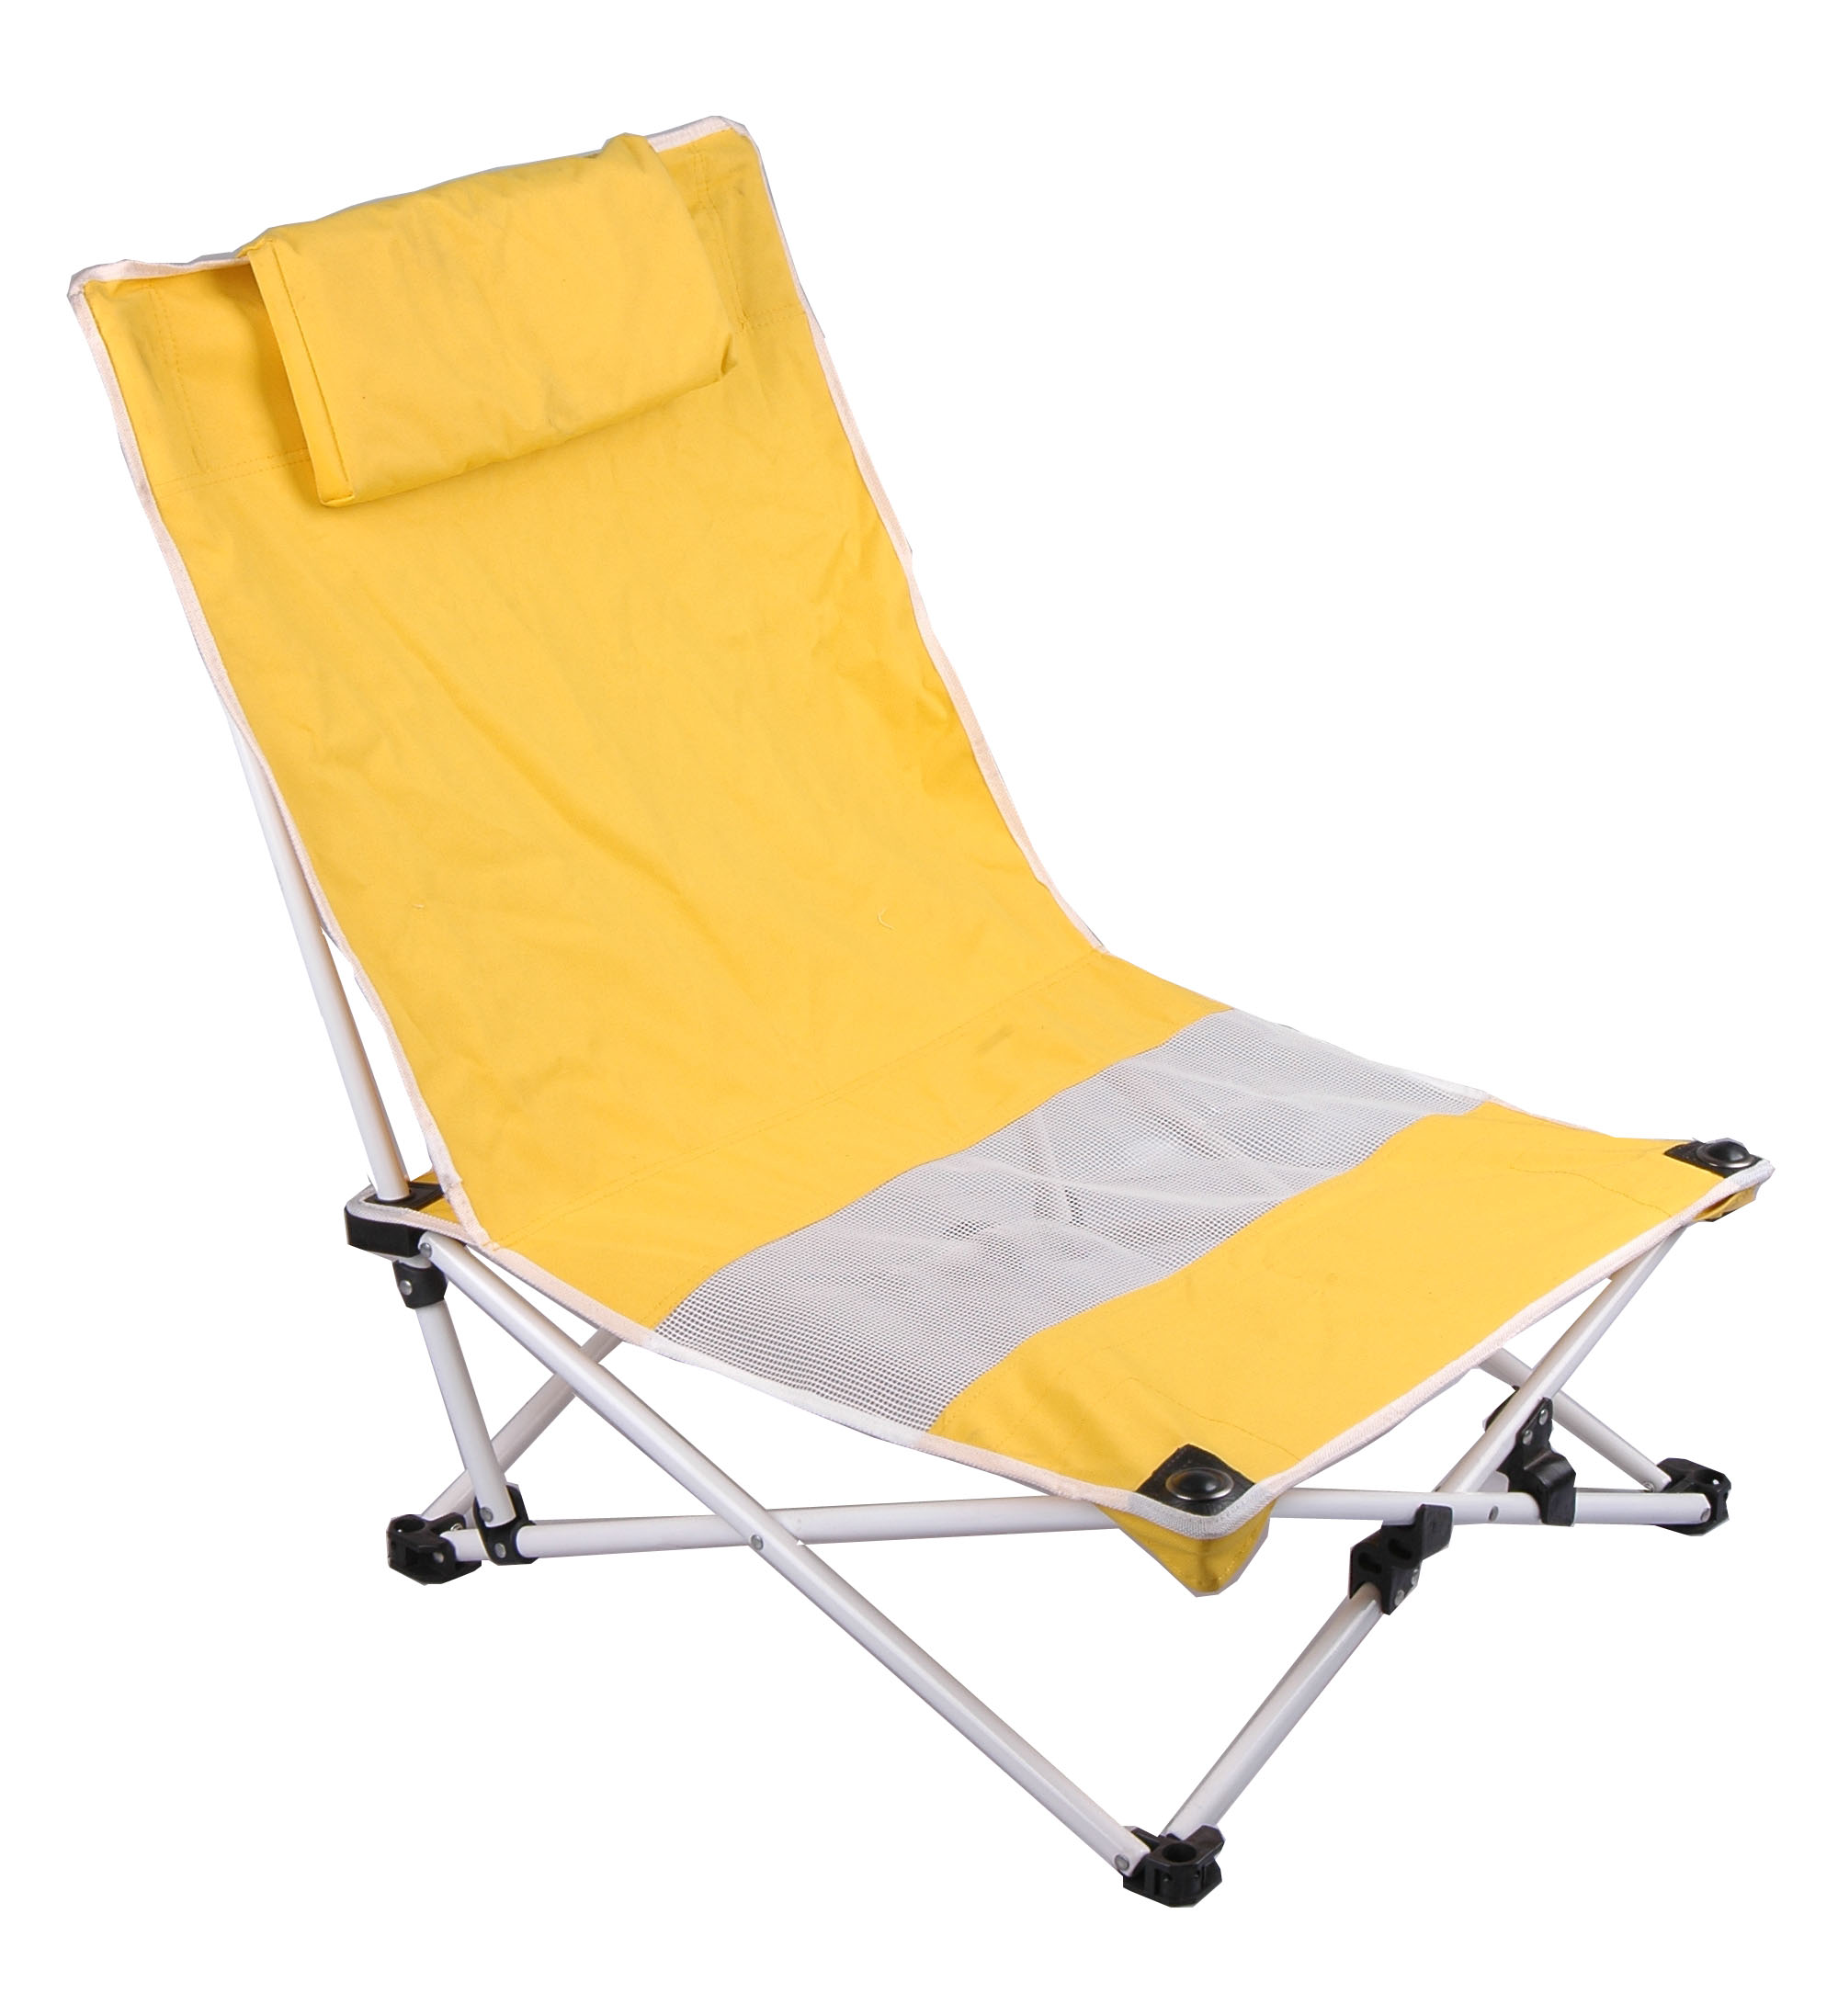 folding camping chair/Lawn Chairs/camping chair/portable chair/beach chair